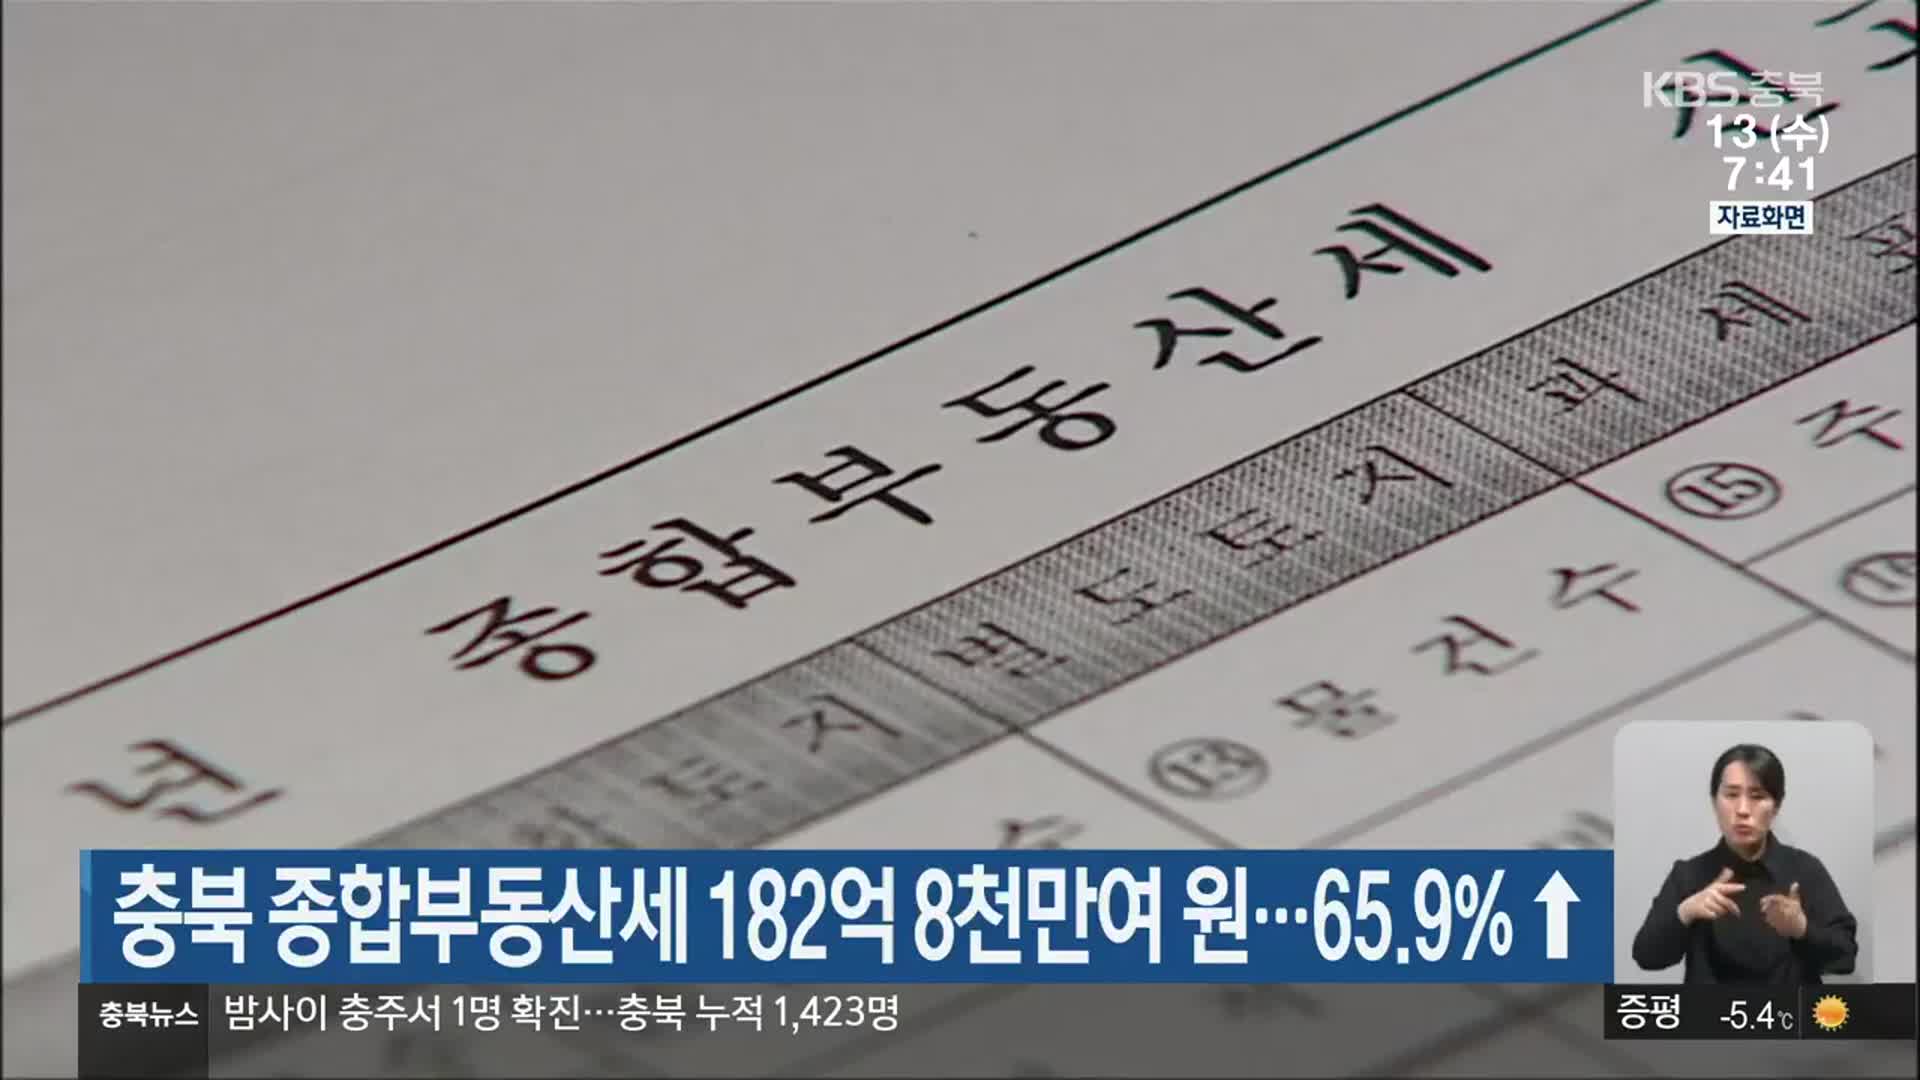 충북 종합부동산세 182억 8천만여 원…65.9%↑